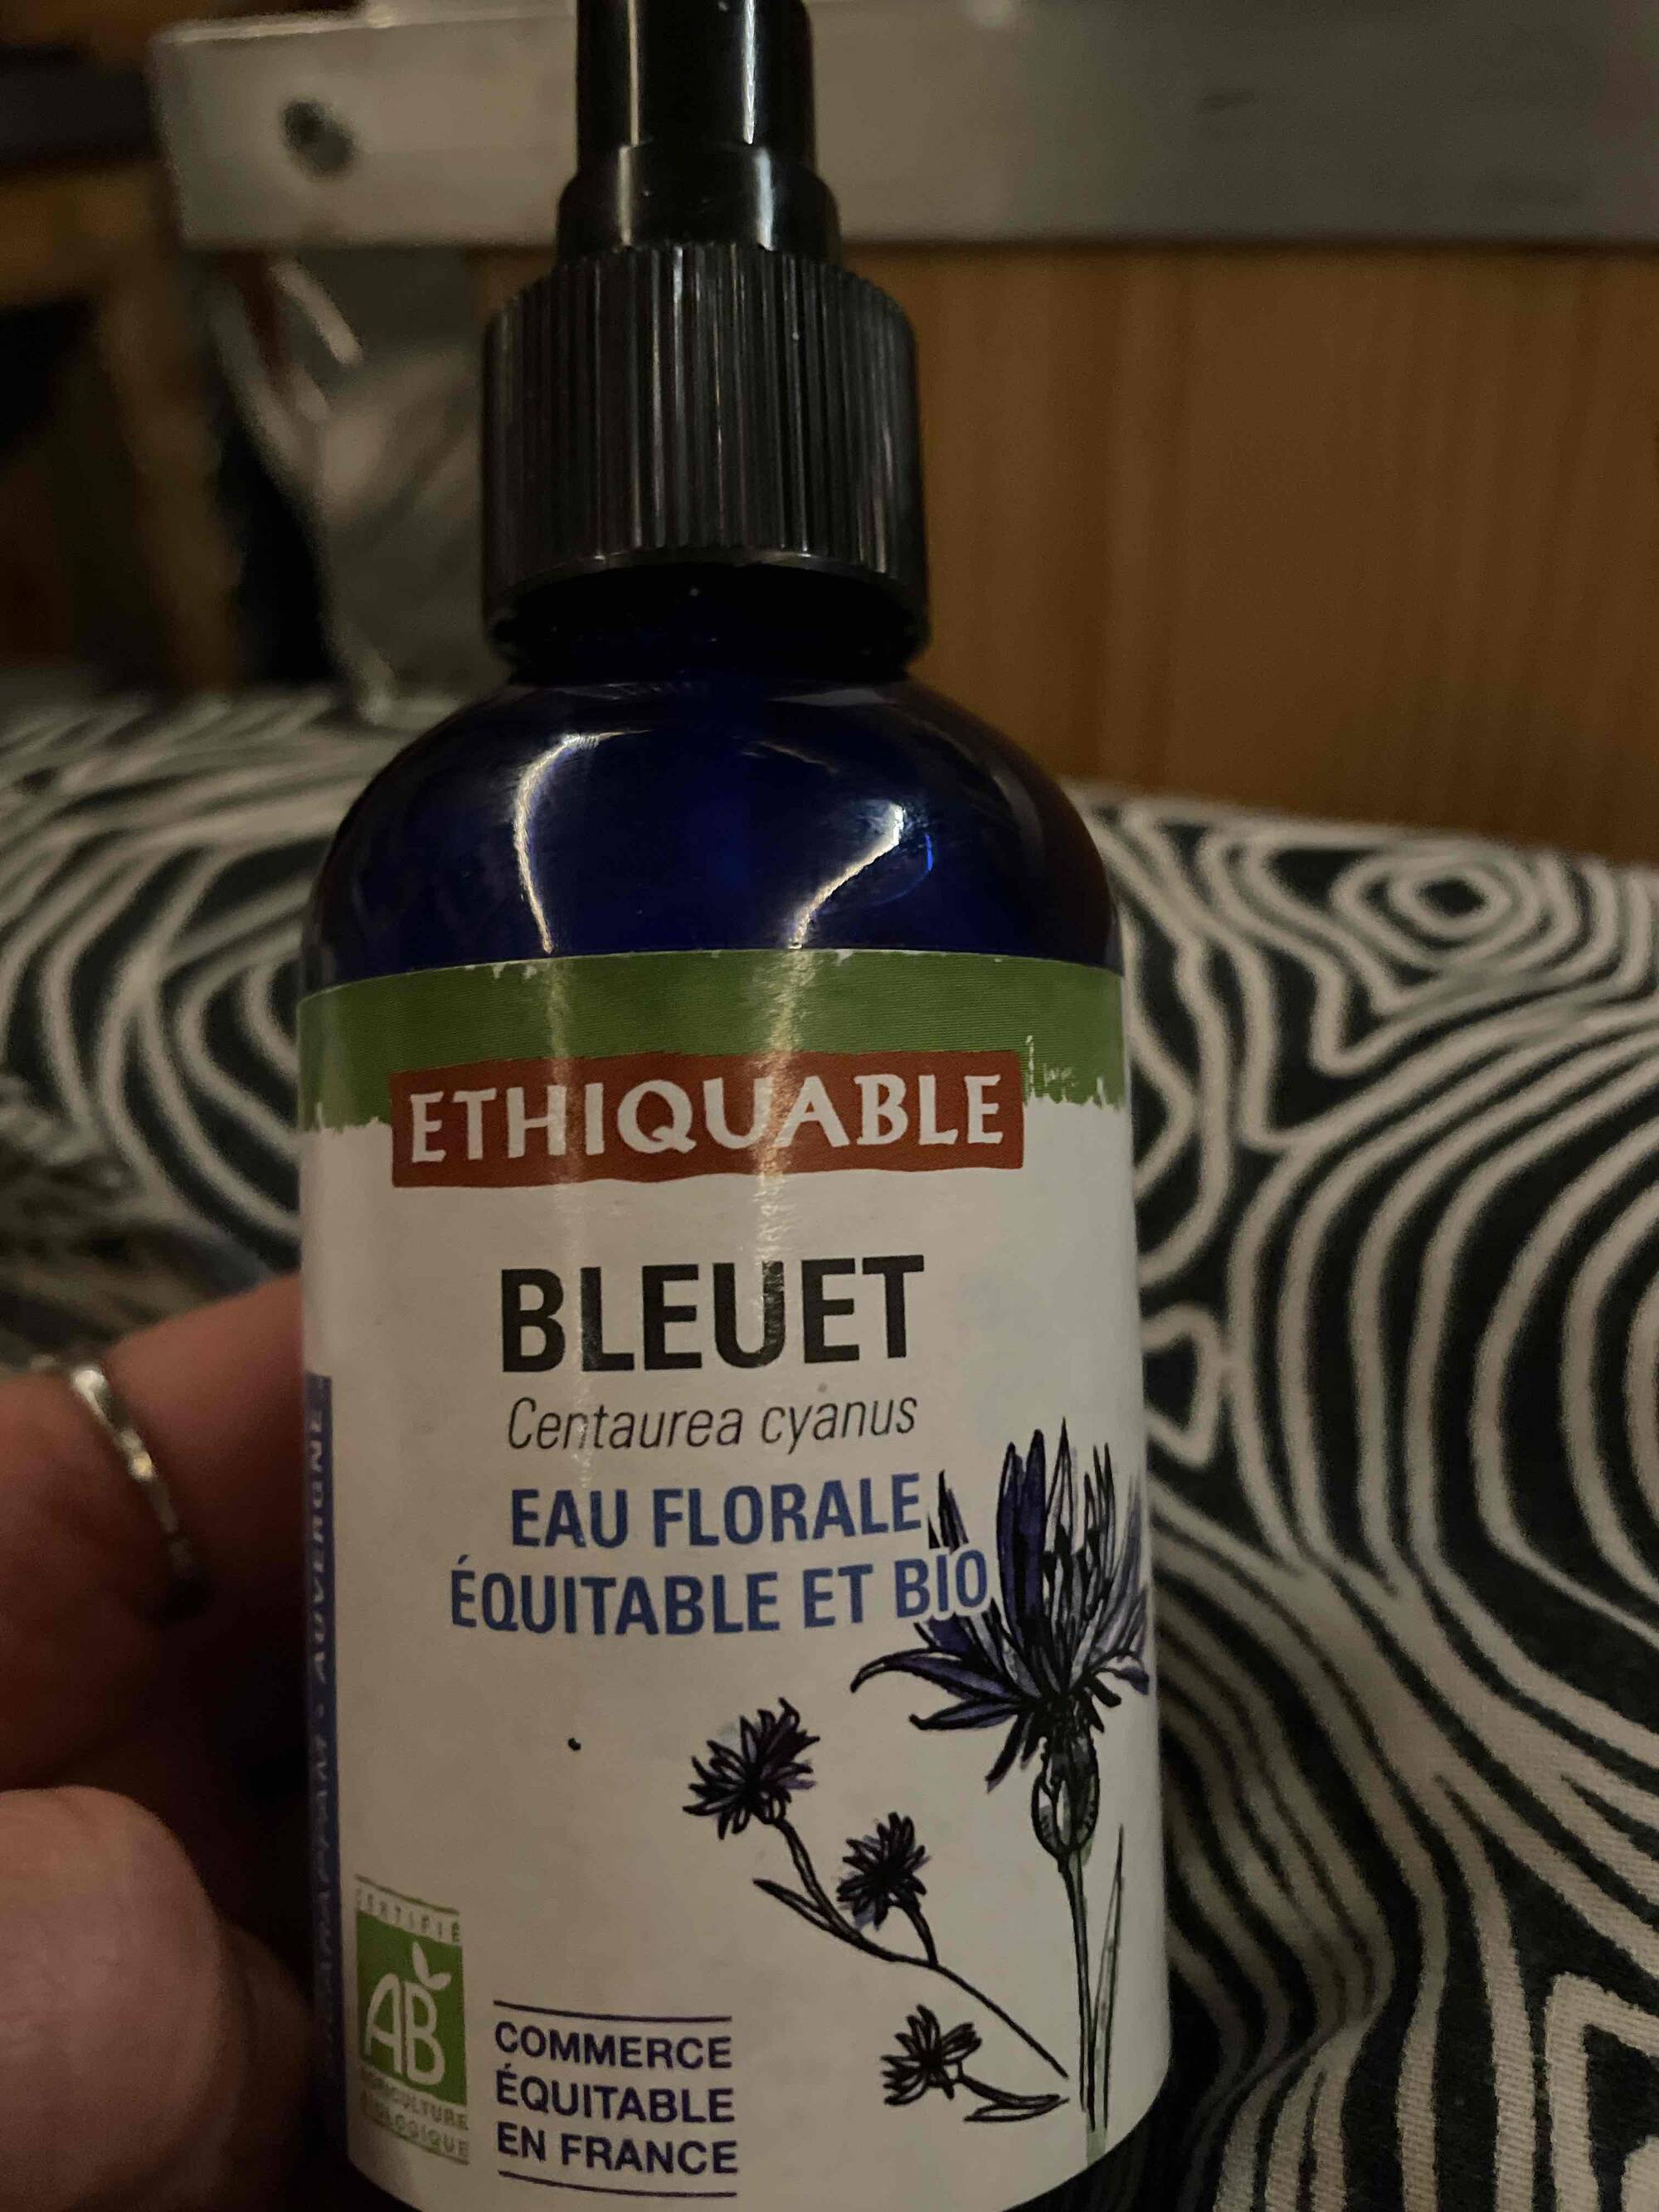 ETHIQUABLE - Bleuet - Eau florale équitable et bio